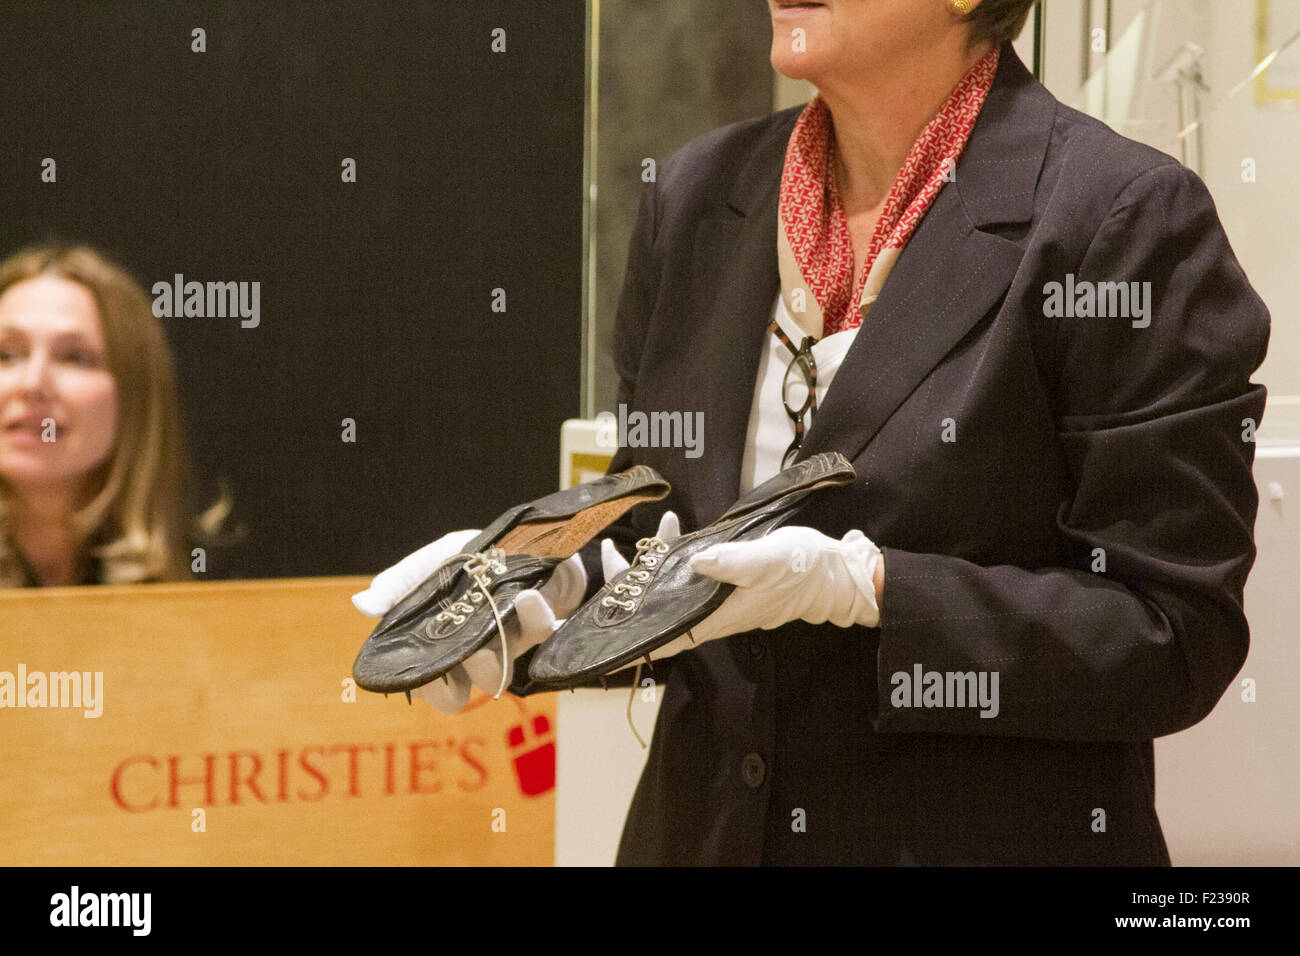 Londra REGNO UNITO. Il 10 settembre 2015. Una coppia di cuoio nero scarpe running indossata da Roger Bannister quando egli spezzò il 4 miglio record sono state vendute a Christies auction house per £266,500 Credito: amer ghazzal/Alamy Live News Foto Stock